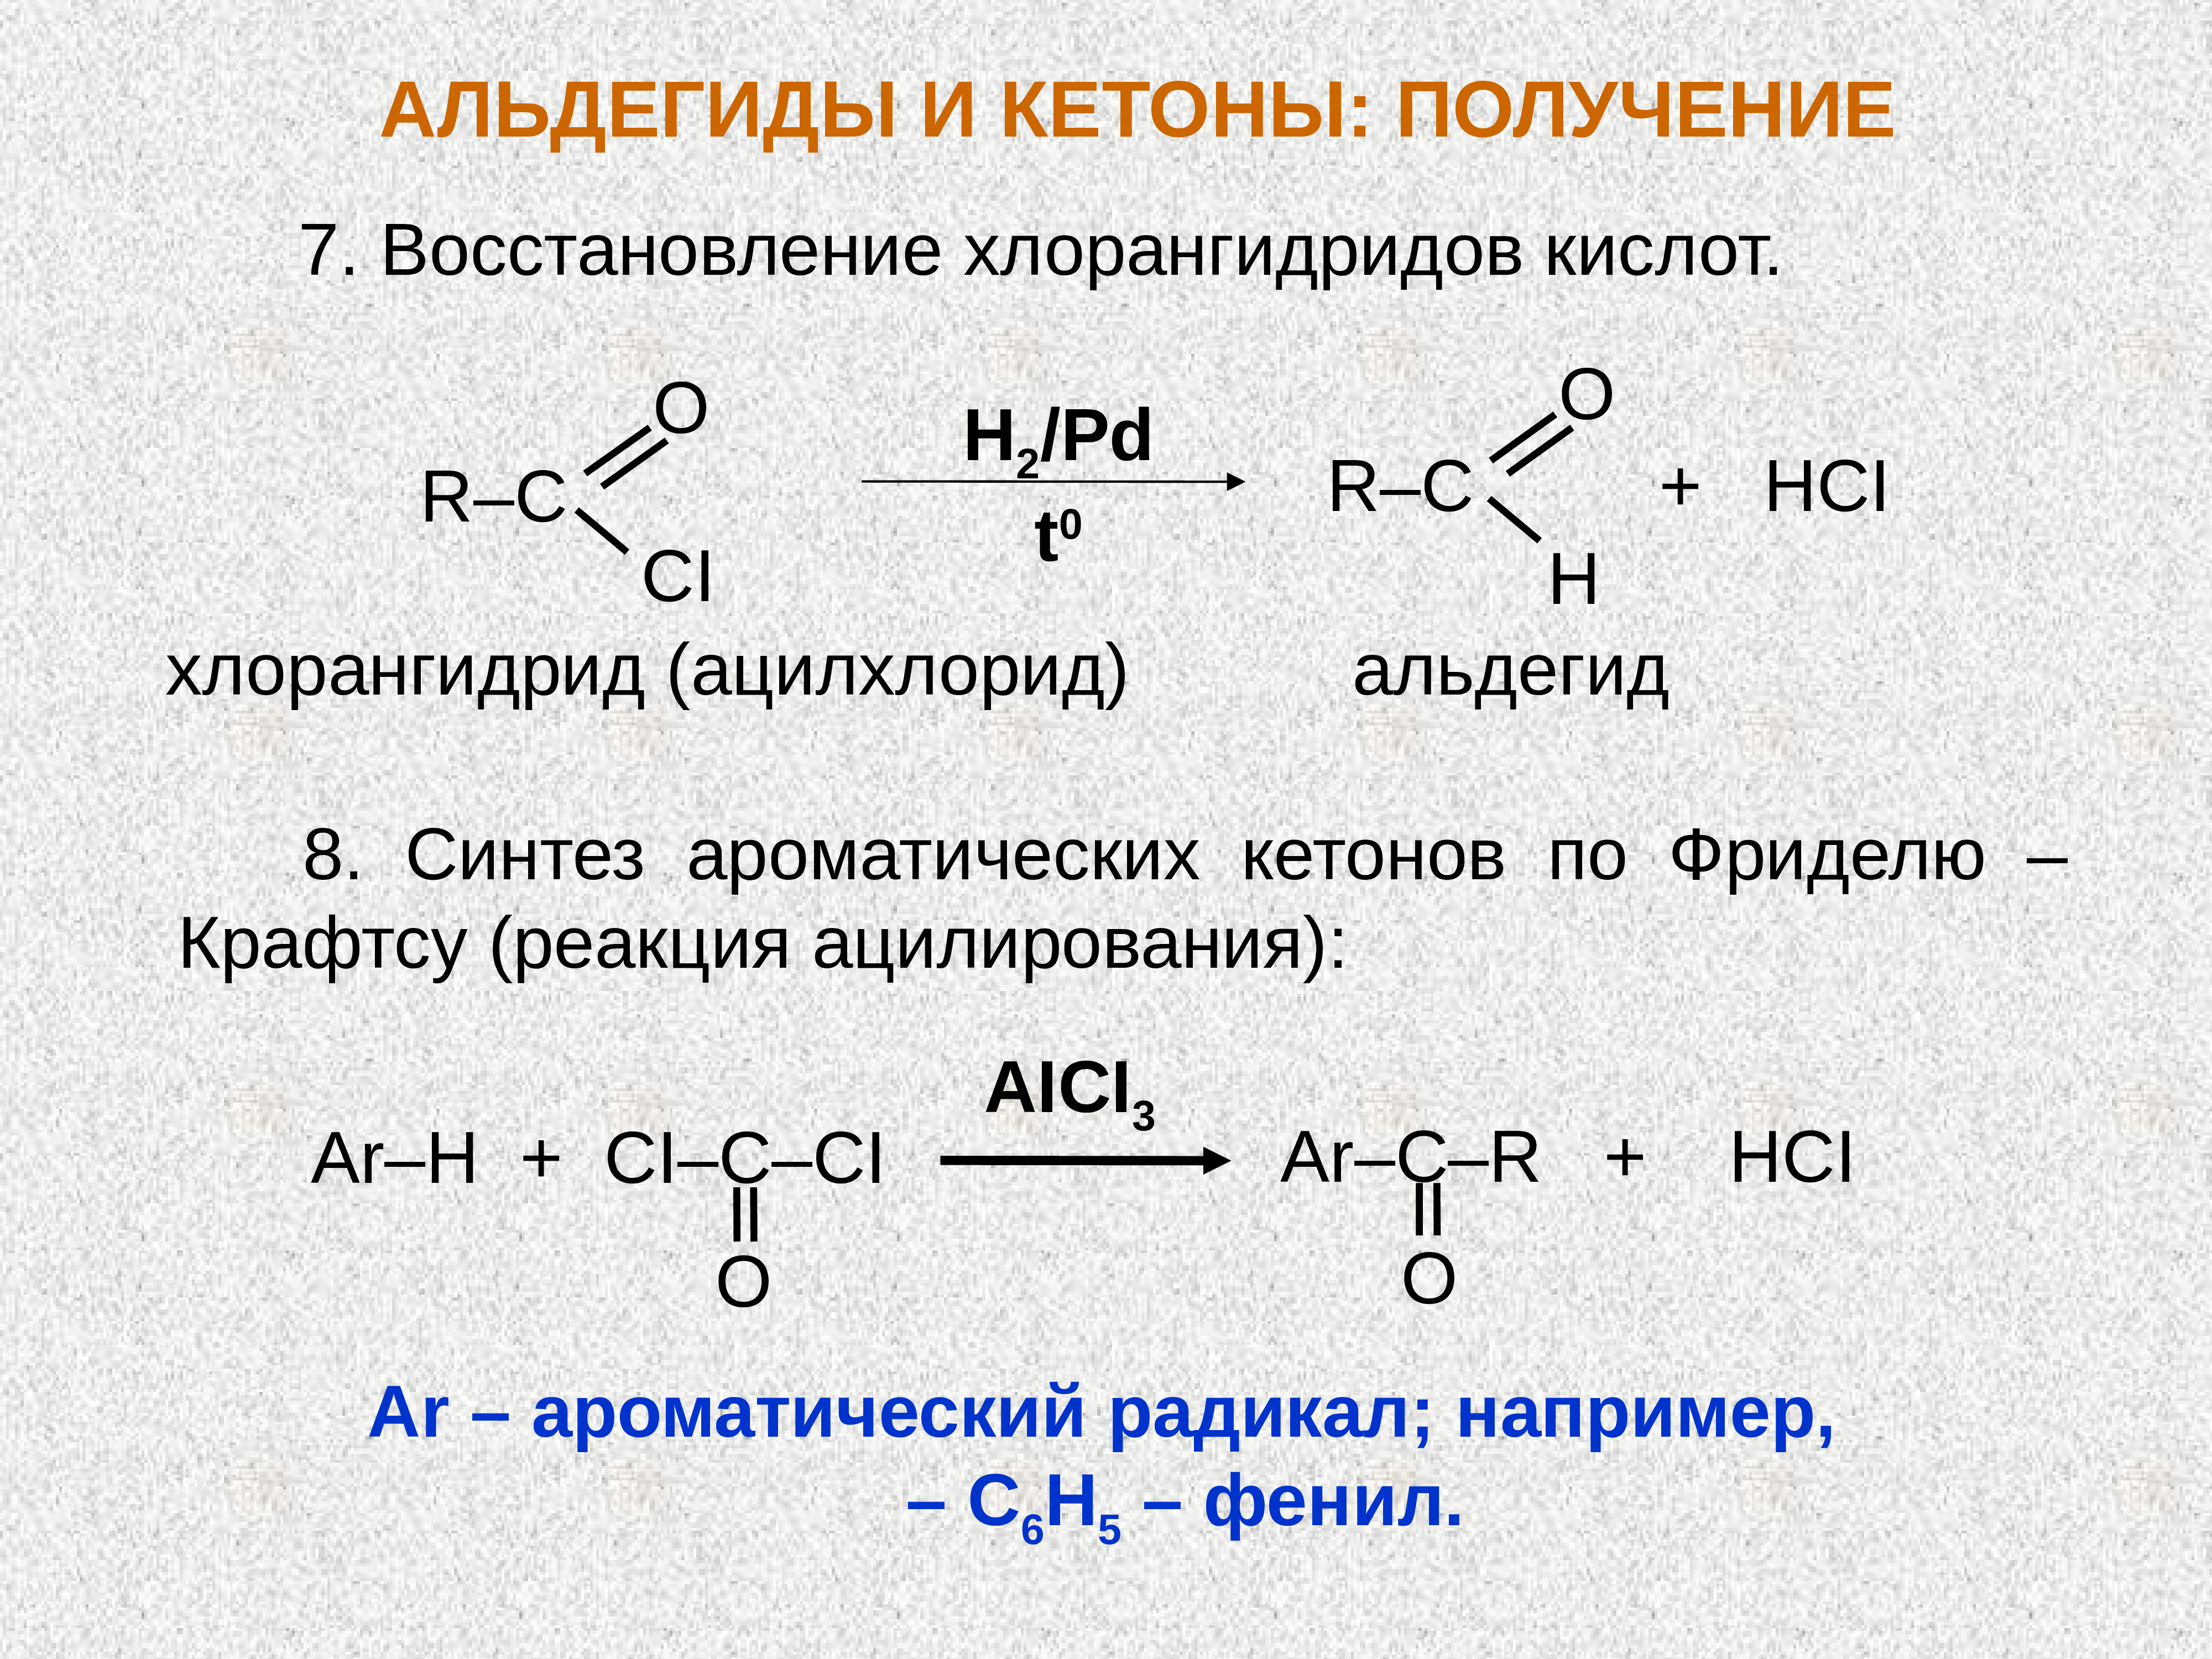 Взаимодействие альдегидов с карбоновыми кислотами. Восстановление хлорангидридов карбоновых кислот. Хлорангидрид уксусной кислоты с альдегидом. Восстановление хлорангидрида карбоновой кислоты. Синтез альдегидов и кетонов.